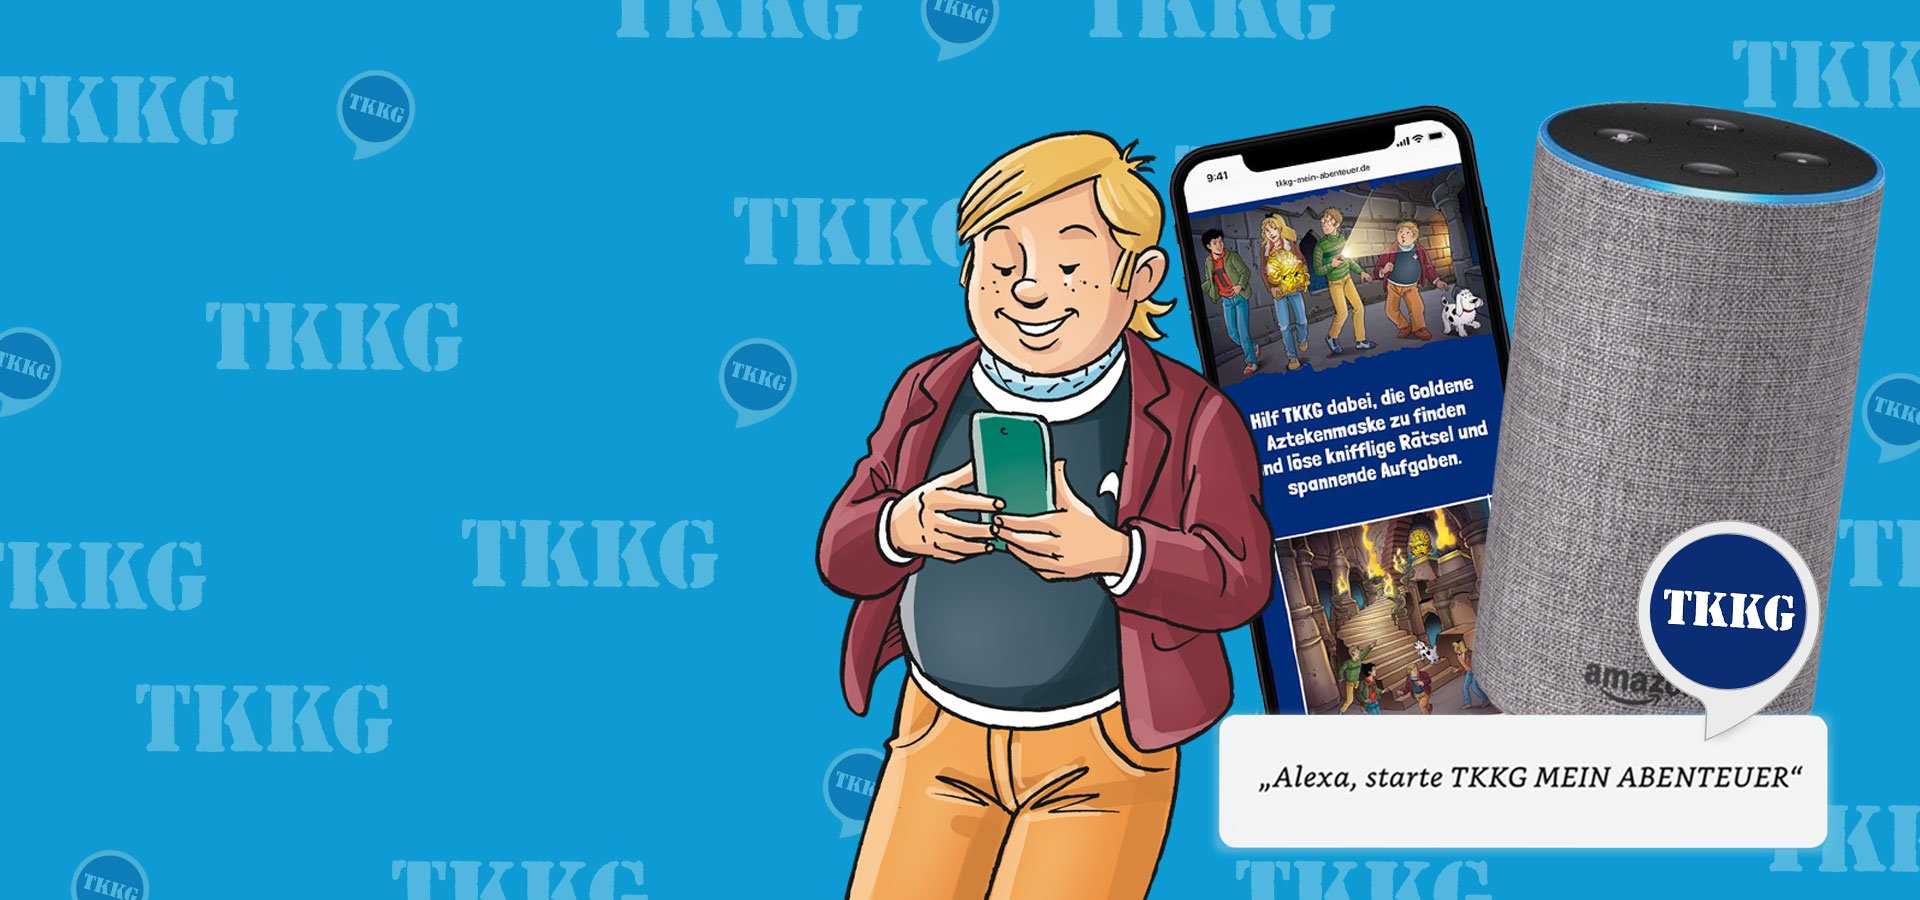 TKKG - Mein Abenteuer - Der neue interaktive TKKG Skill 